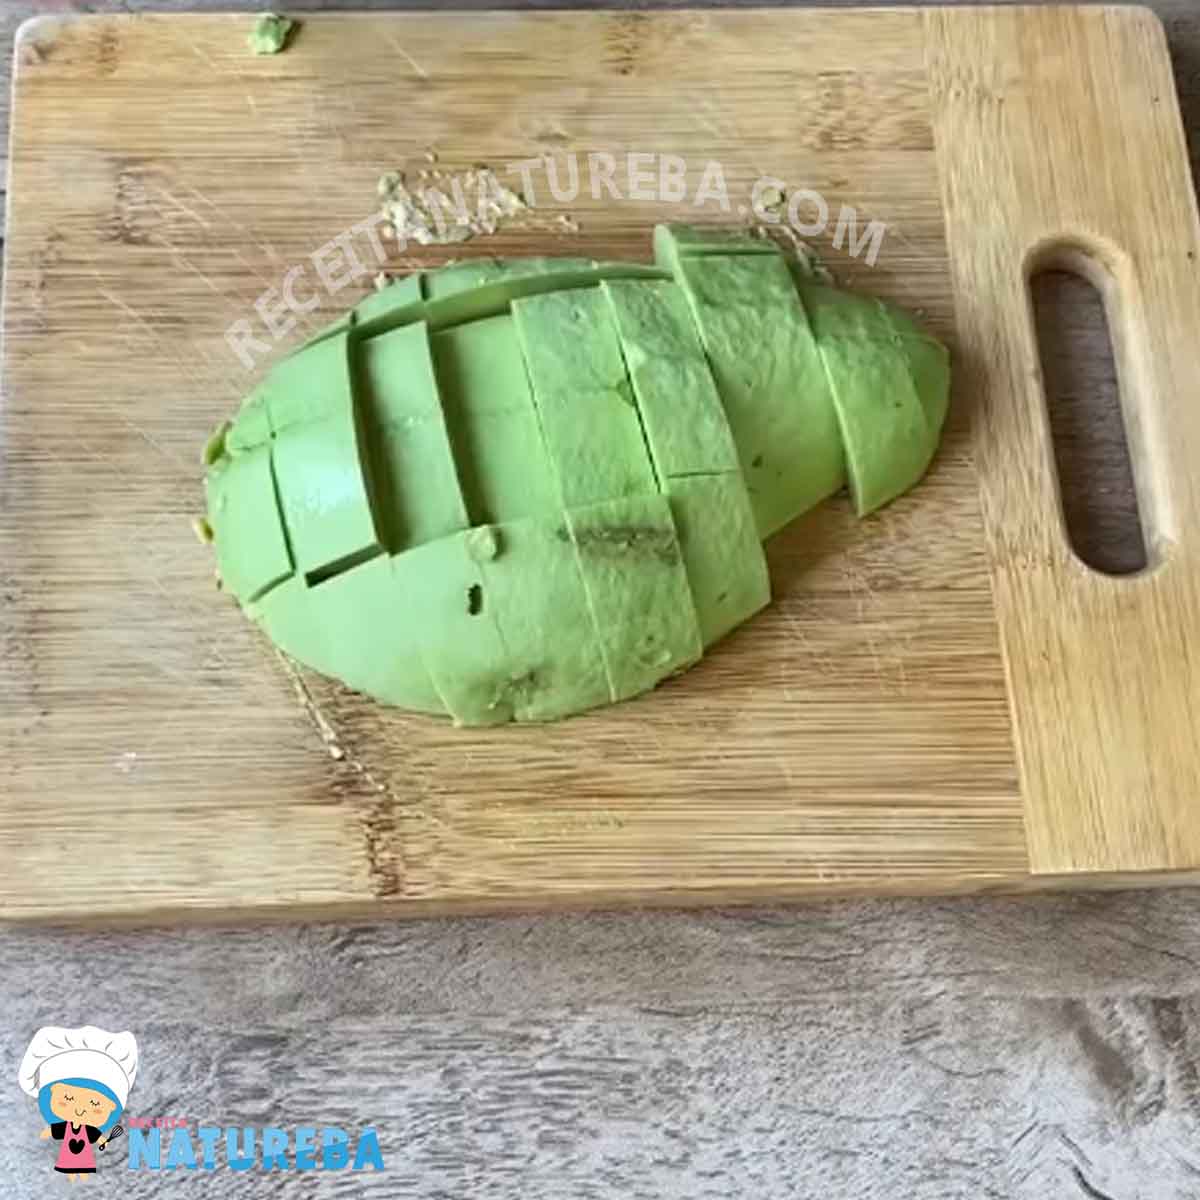 cortando o abacate para preparar a vitamina